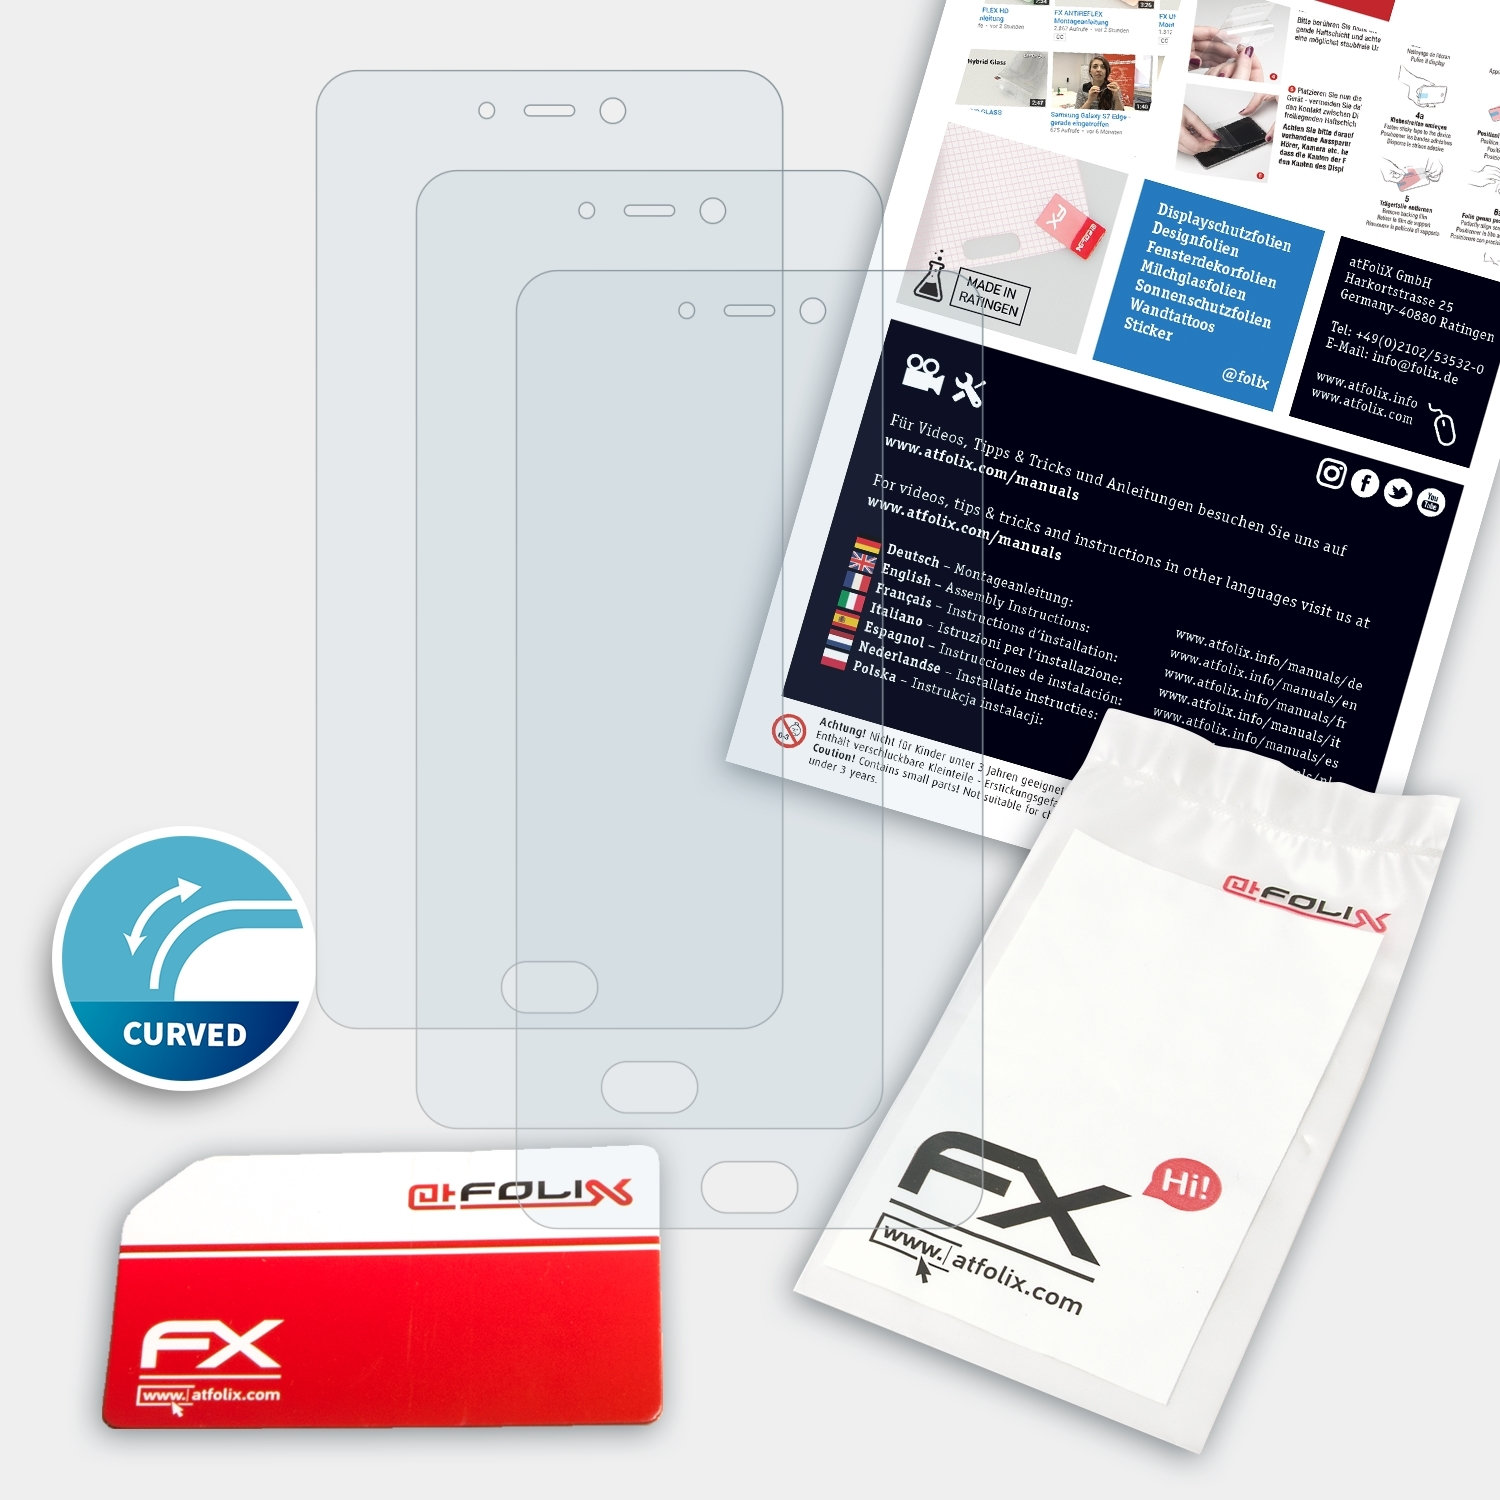 ATFOLIX 3x FX-ActiFleX Leagoo T5) Displayschutz(für